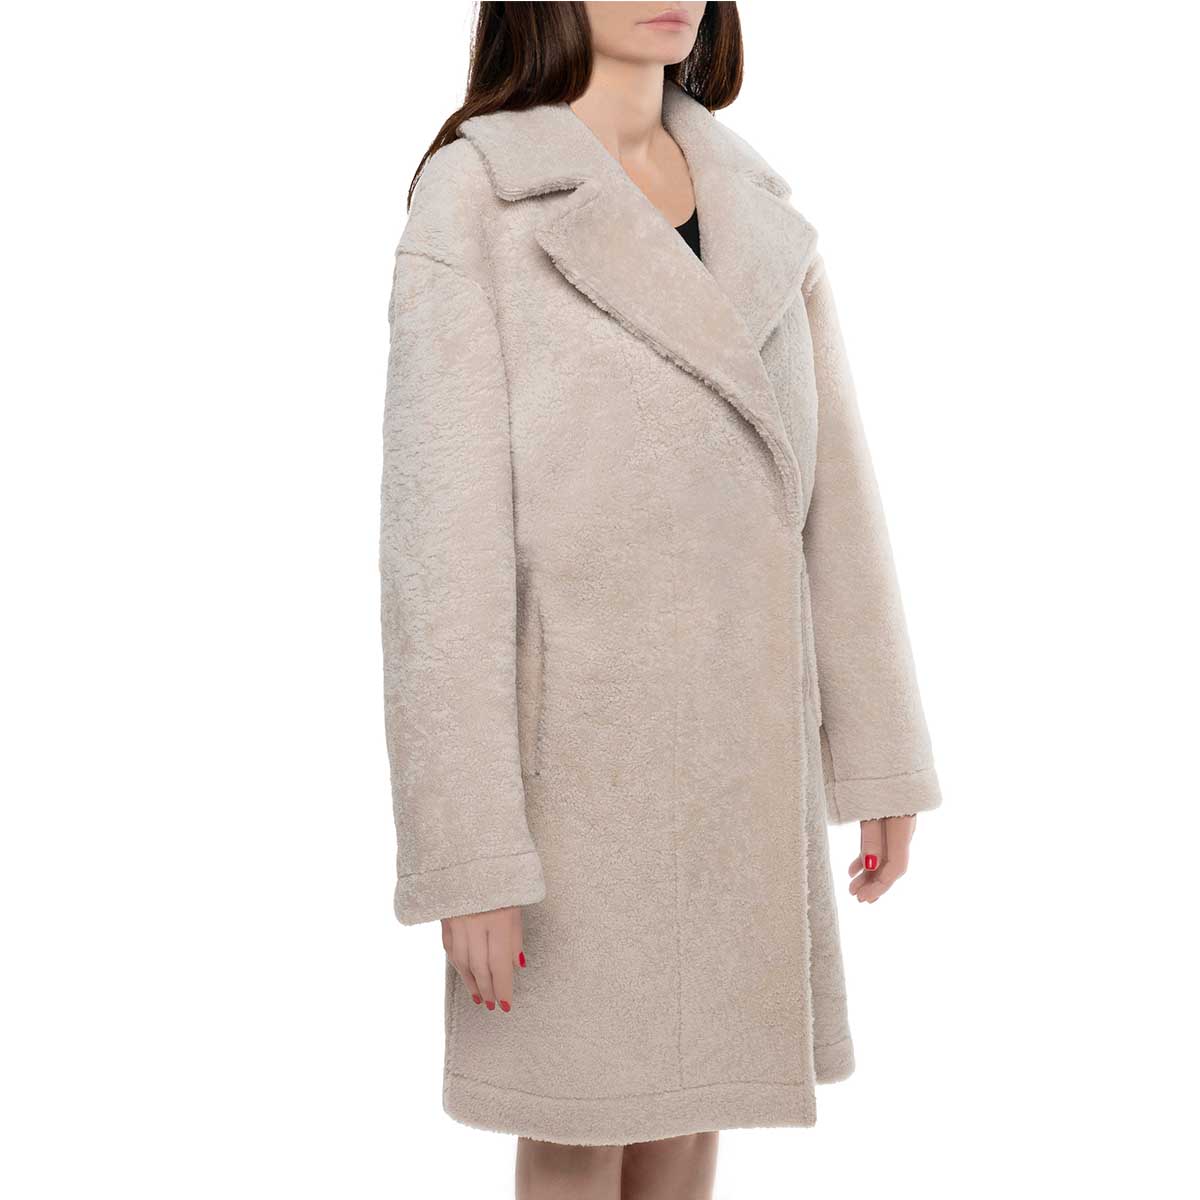 Manteau femme long en peau de mouton beige avec boutons